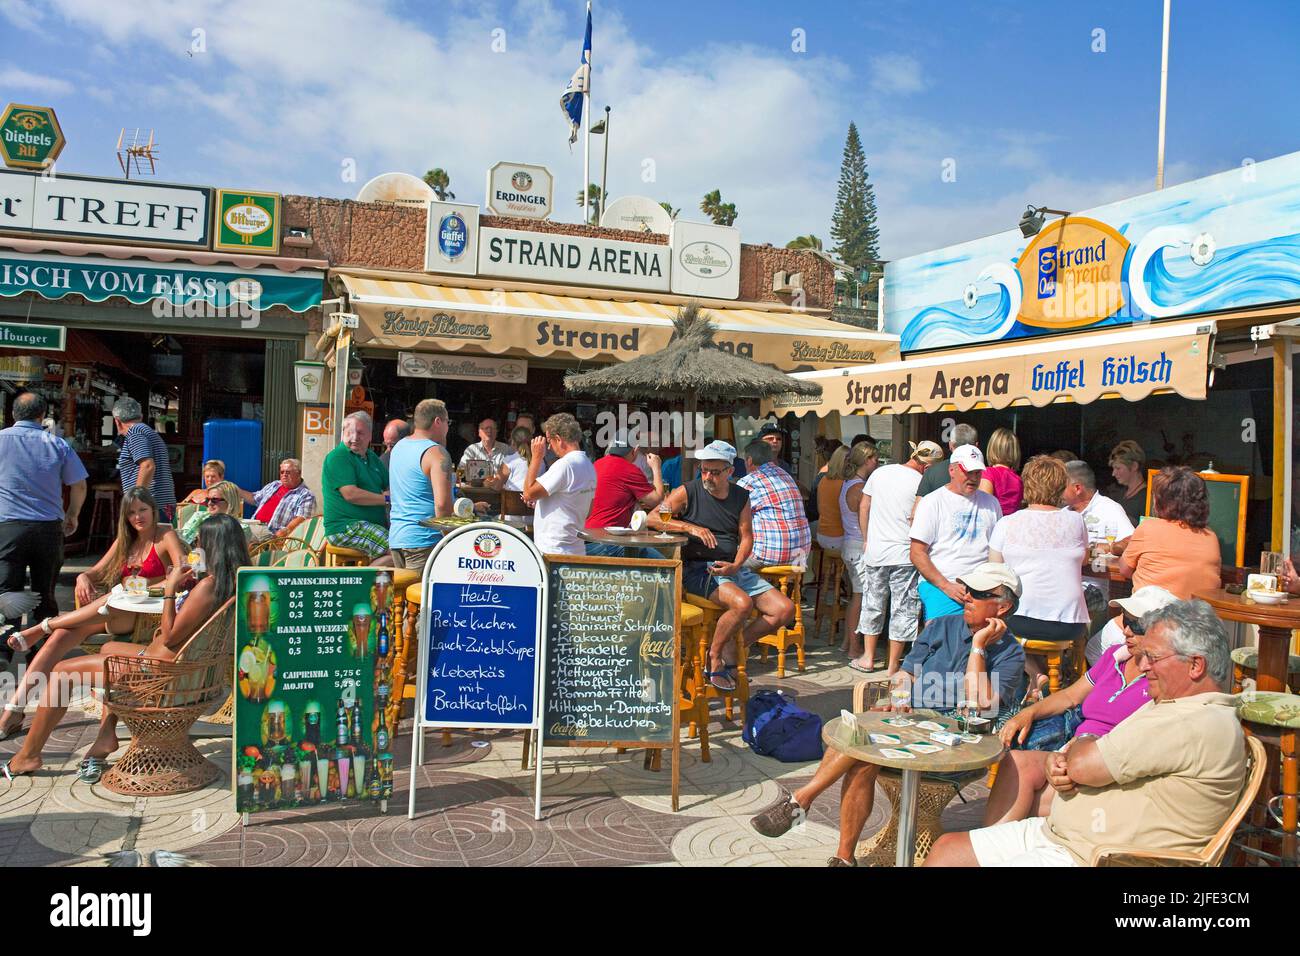 Geschäfte, Bars und Restaurants an der Strandpromenade, Playa del Ingles, Grand Canary, Kanarische Inseln, Spanien, Europa Stockfoto